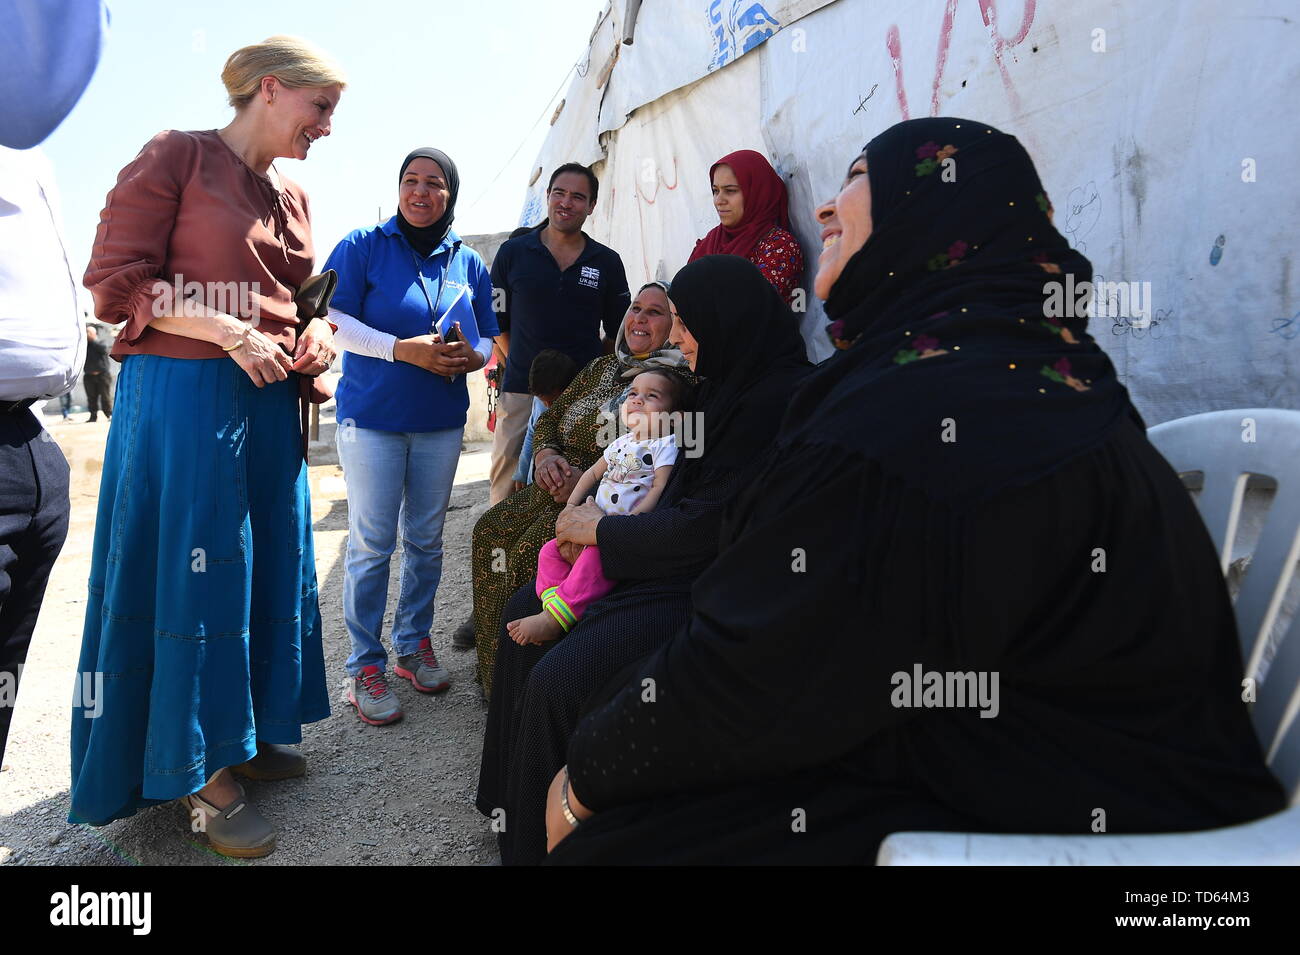 La Comtesse de Wessex rencontrez femmes syriennes, y compris les réfugiés au Liban déplacées par le conflit Syrien, en visite dans un cadre informel de règlement de tentes dans la vallée de la Bekaa, au Liban, au cours de la première visite officielle dans le pays. Banque D'Images